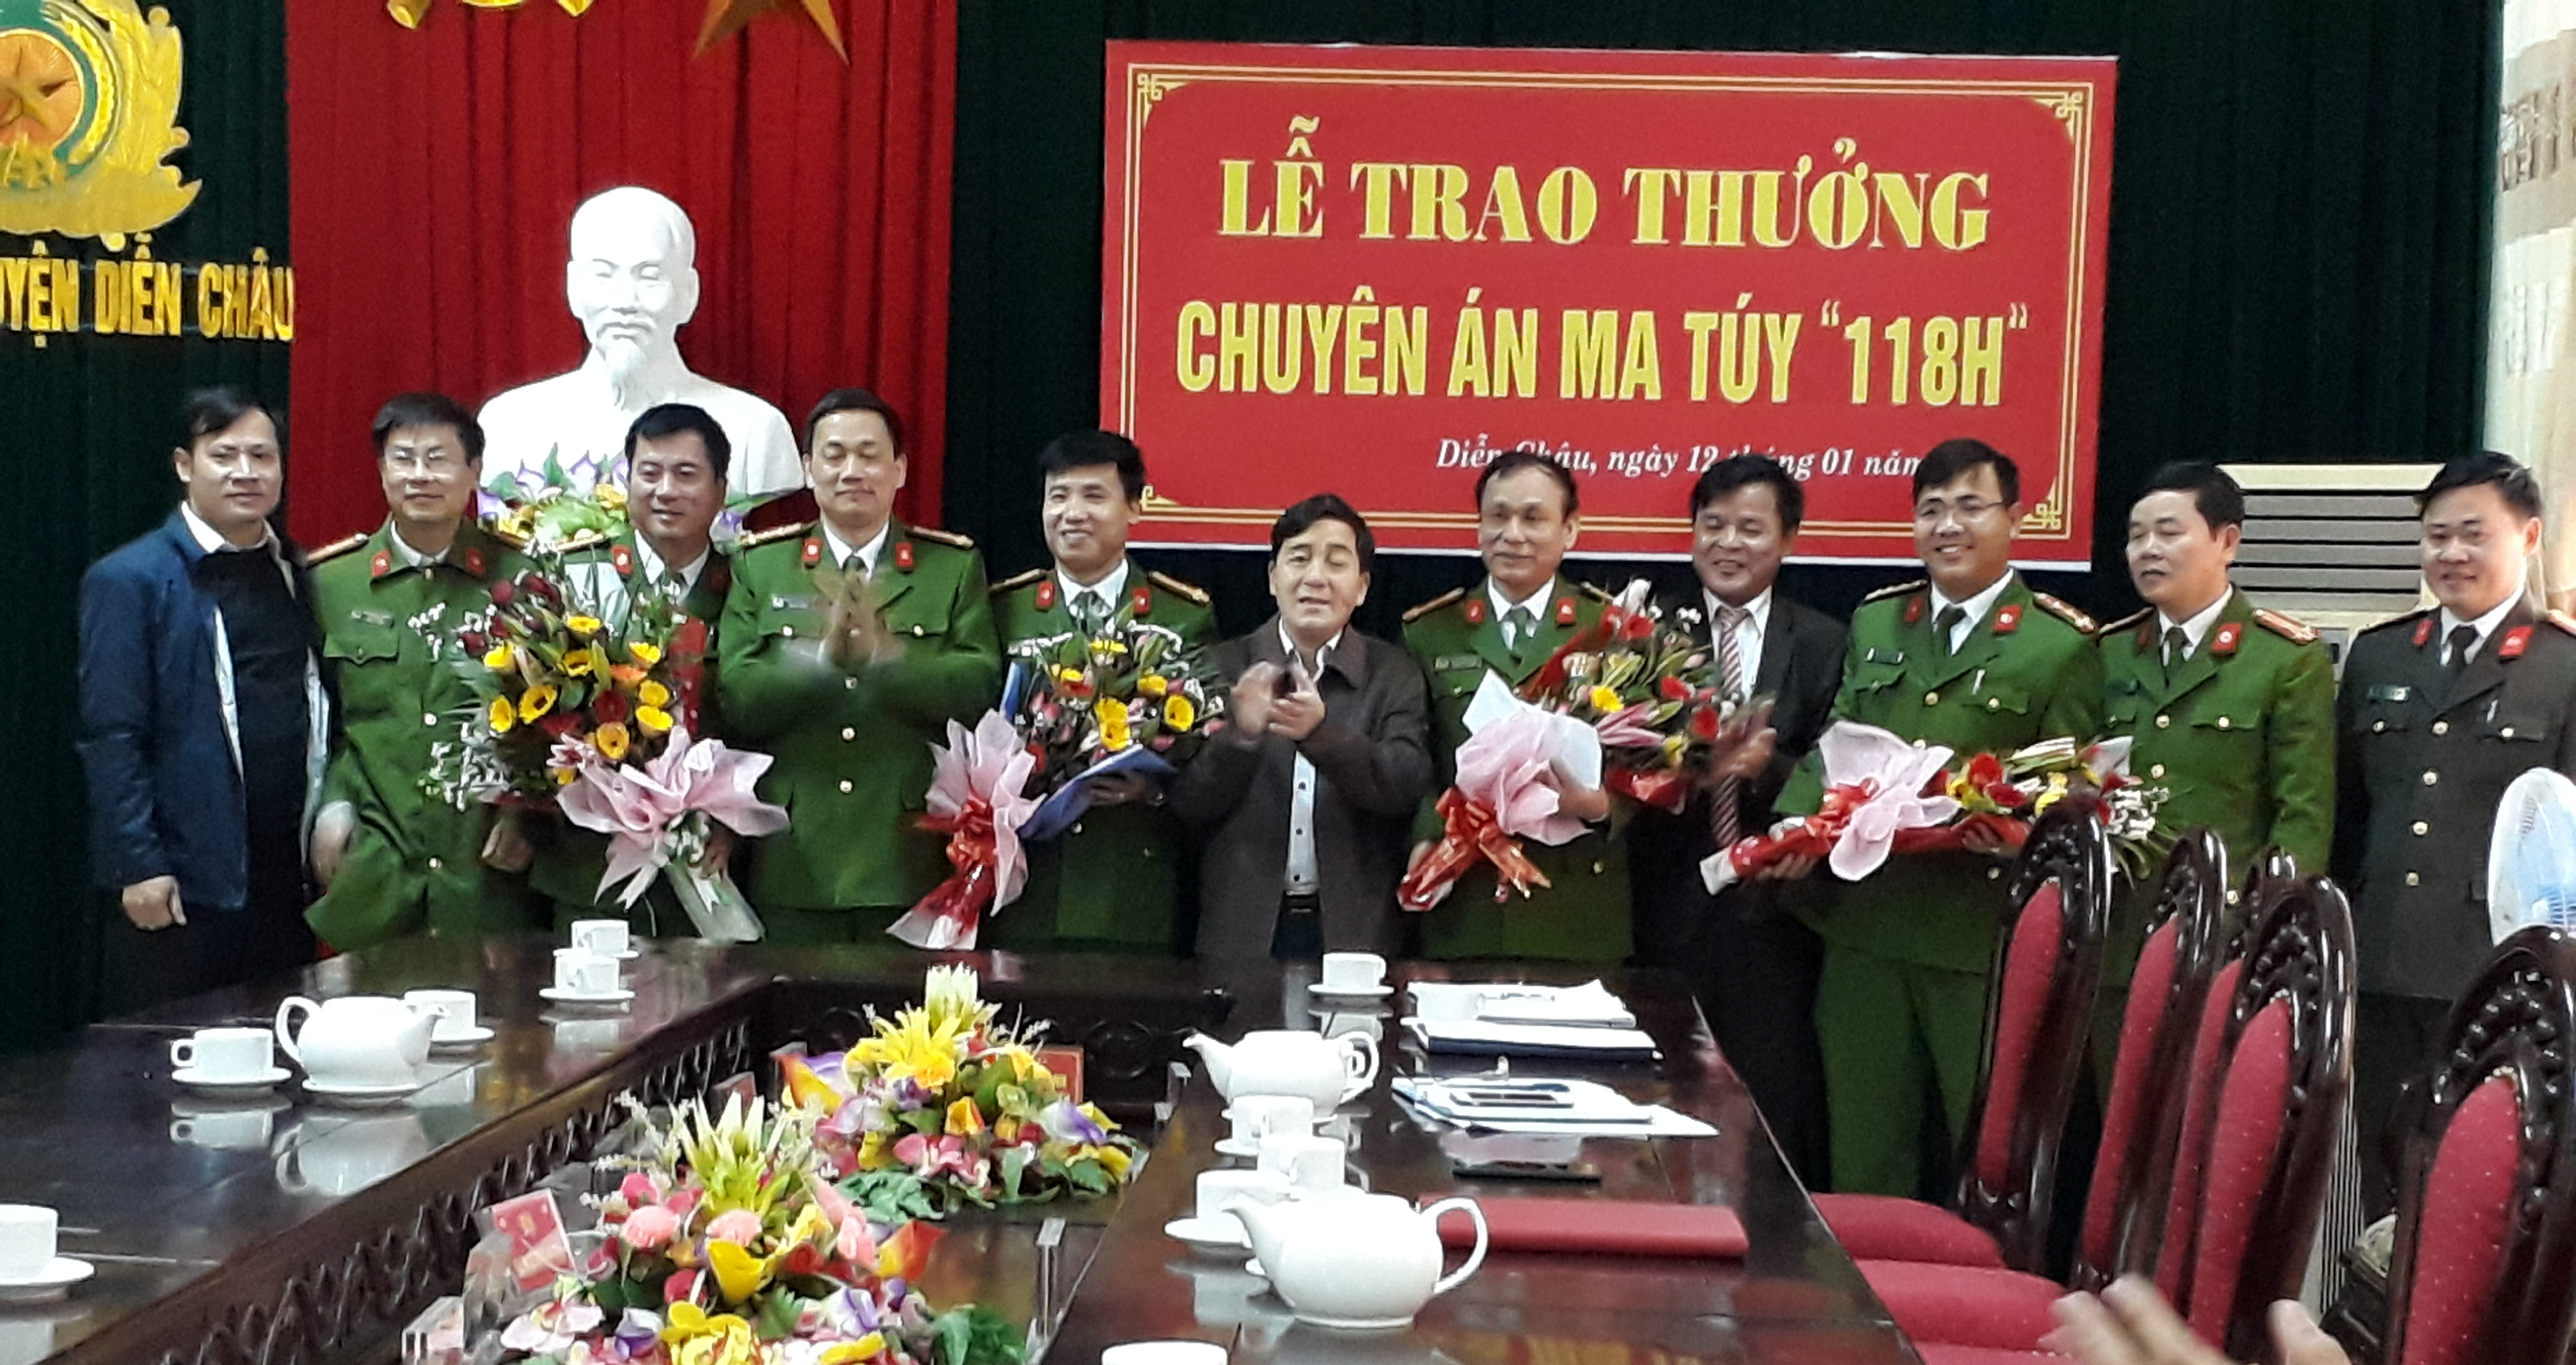 Lãnh đạo Công an tỉnh, UBND huyện Diễn Châu trao thưởng cho Ban chuyên án. Ảnh: Mai Sao